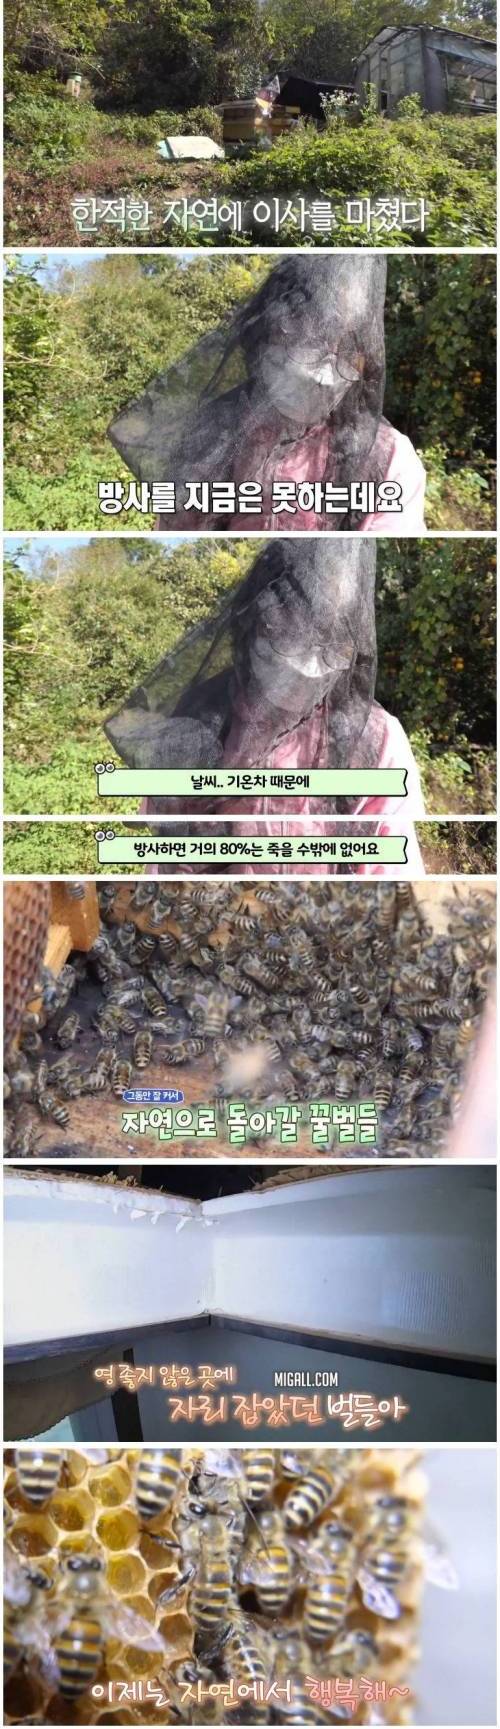 [스압] 꿀벌 사체가 매일 수백마리 발견되는 가정집.jpg